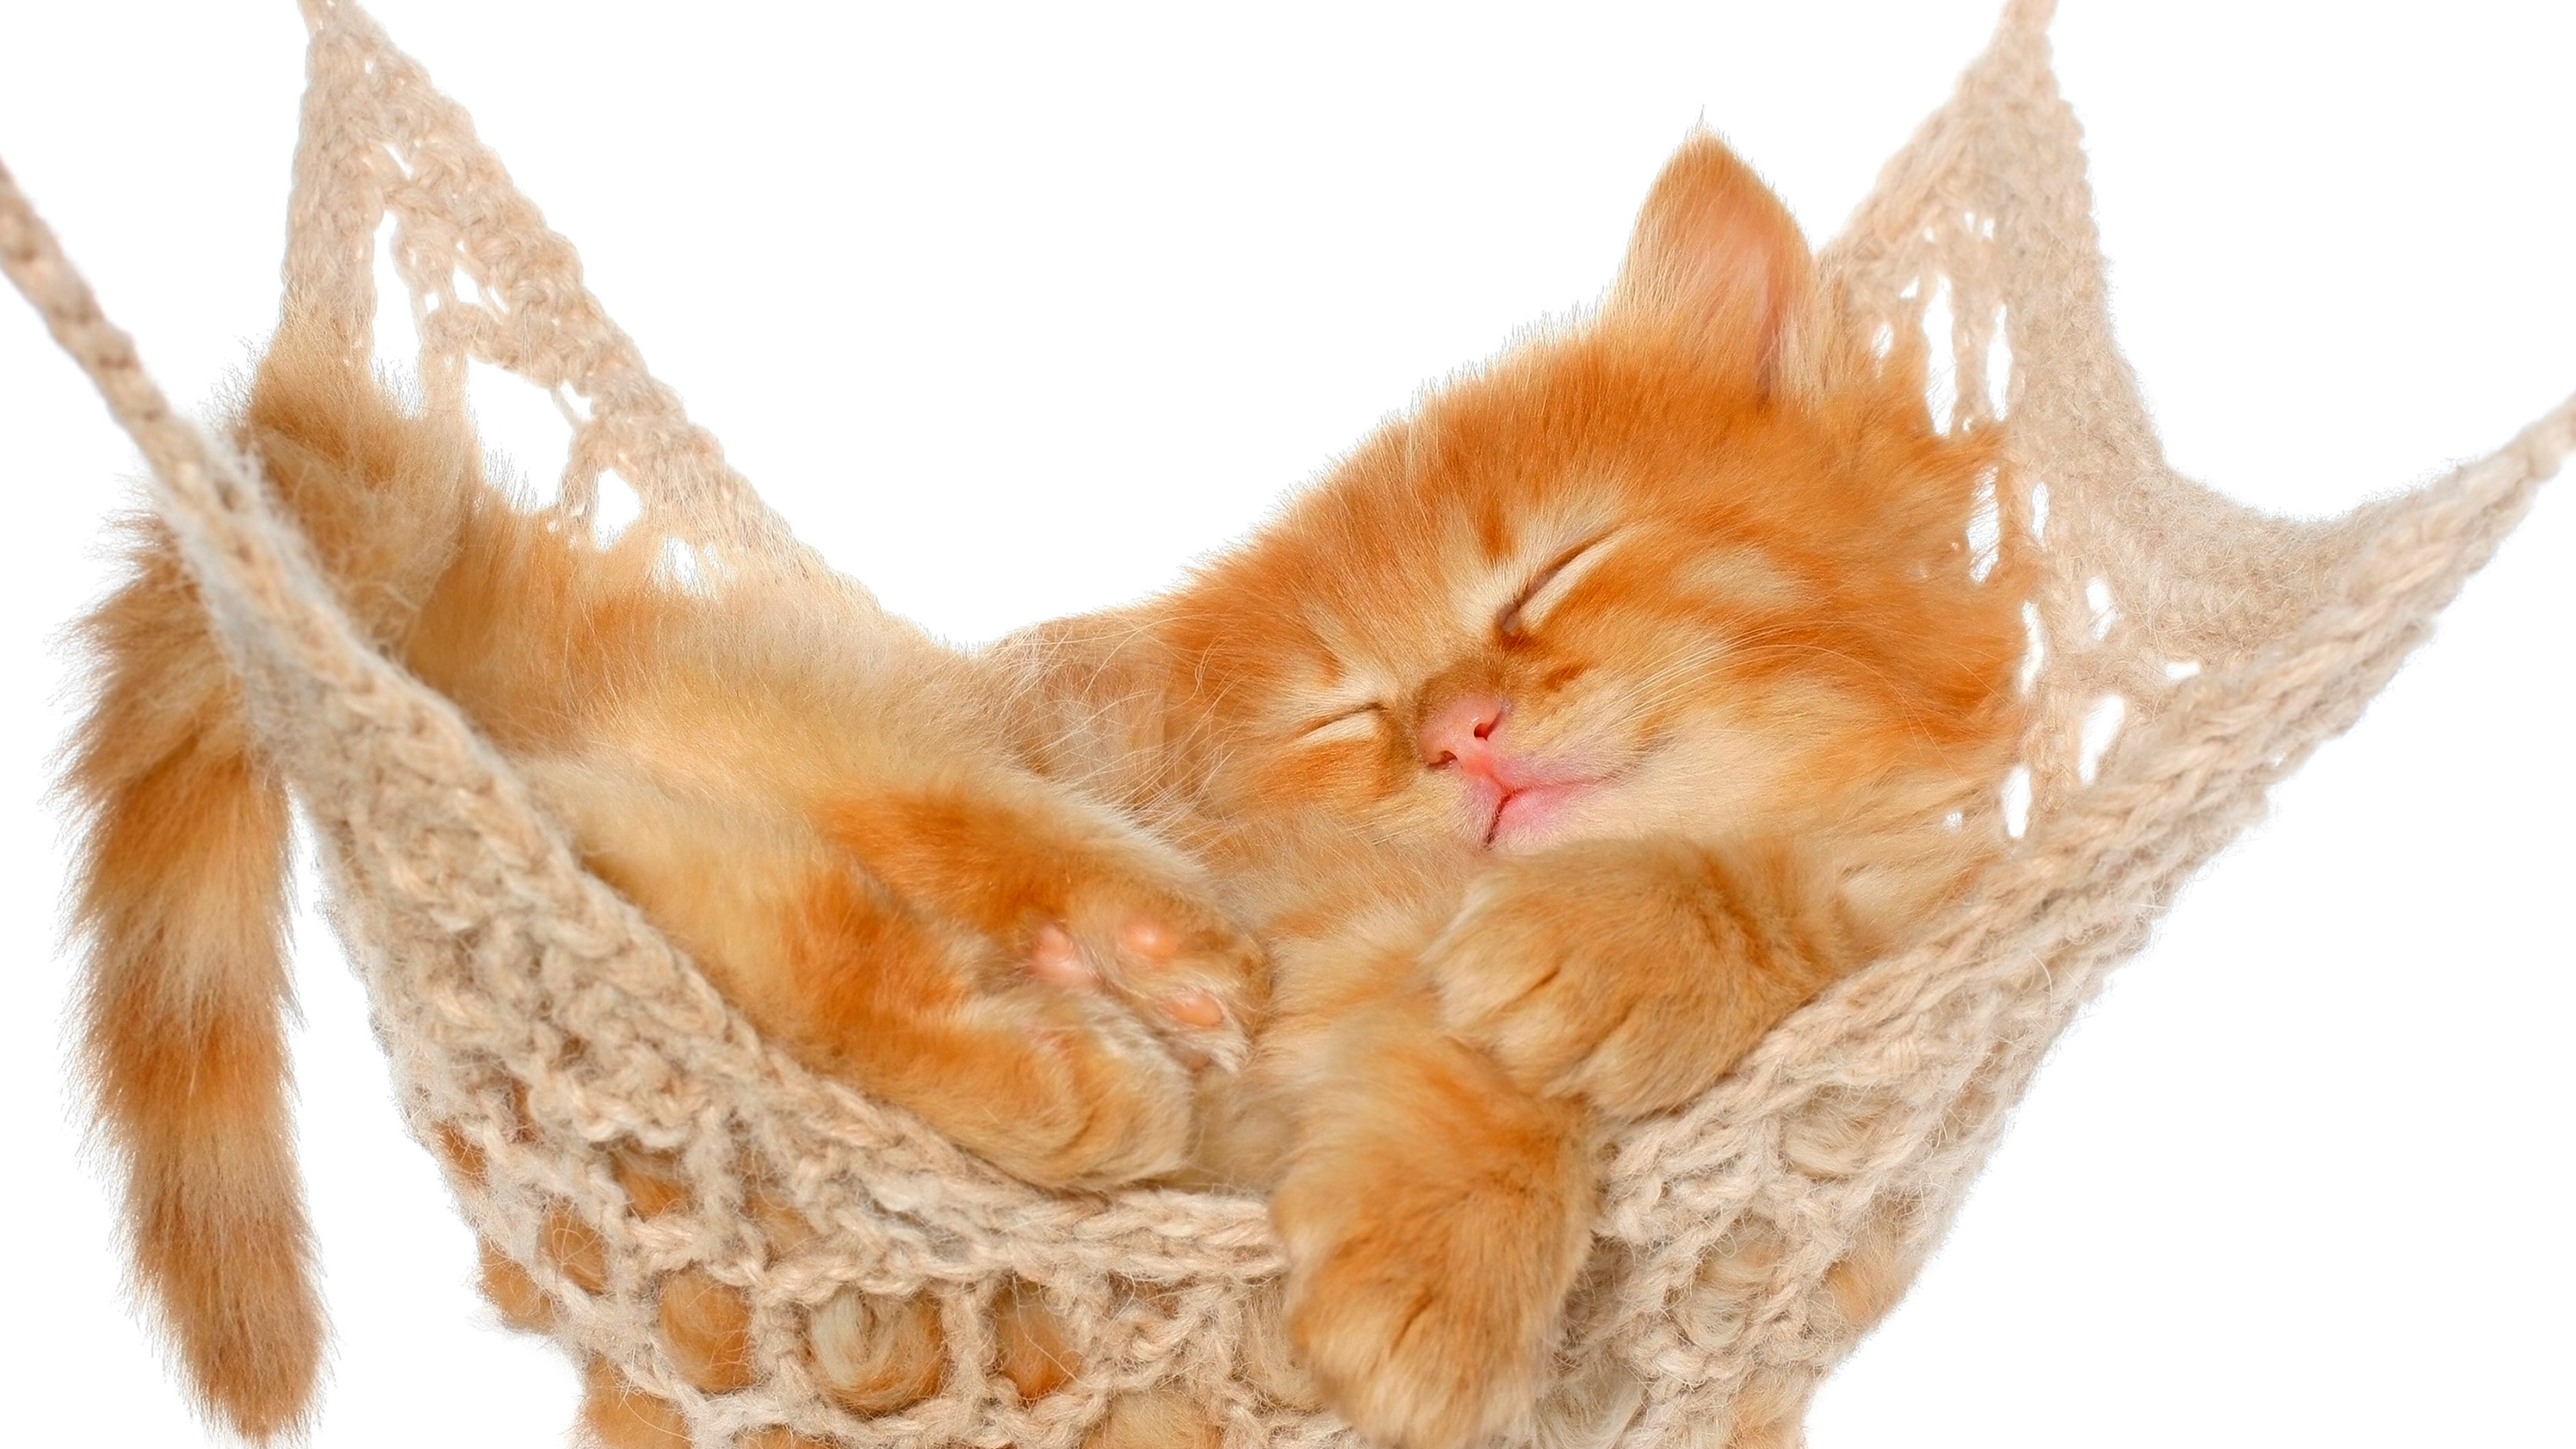 Wallpapers kitten hammock dream on the desktop